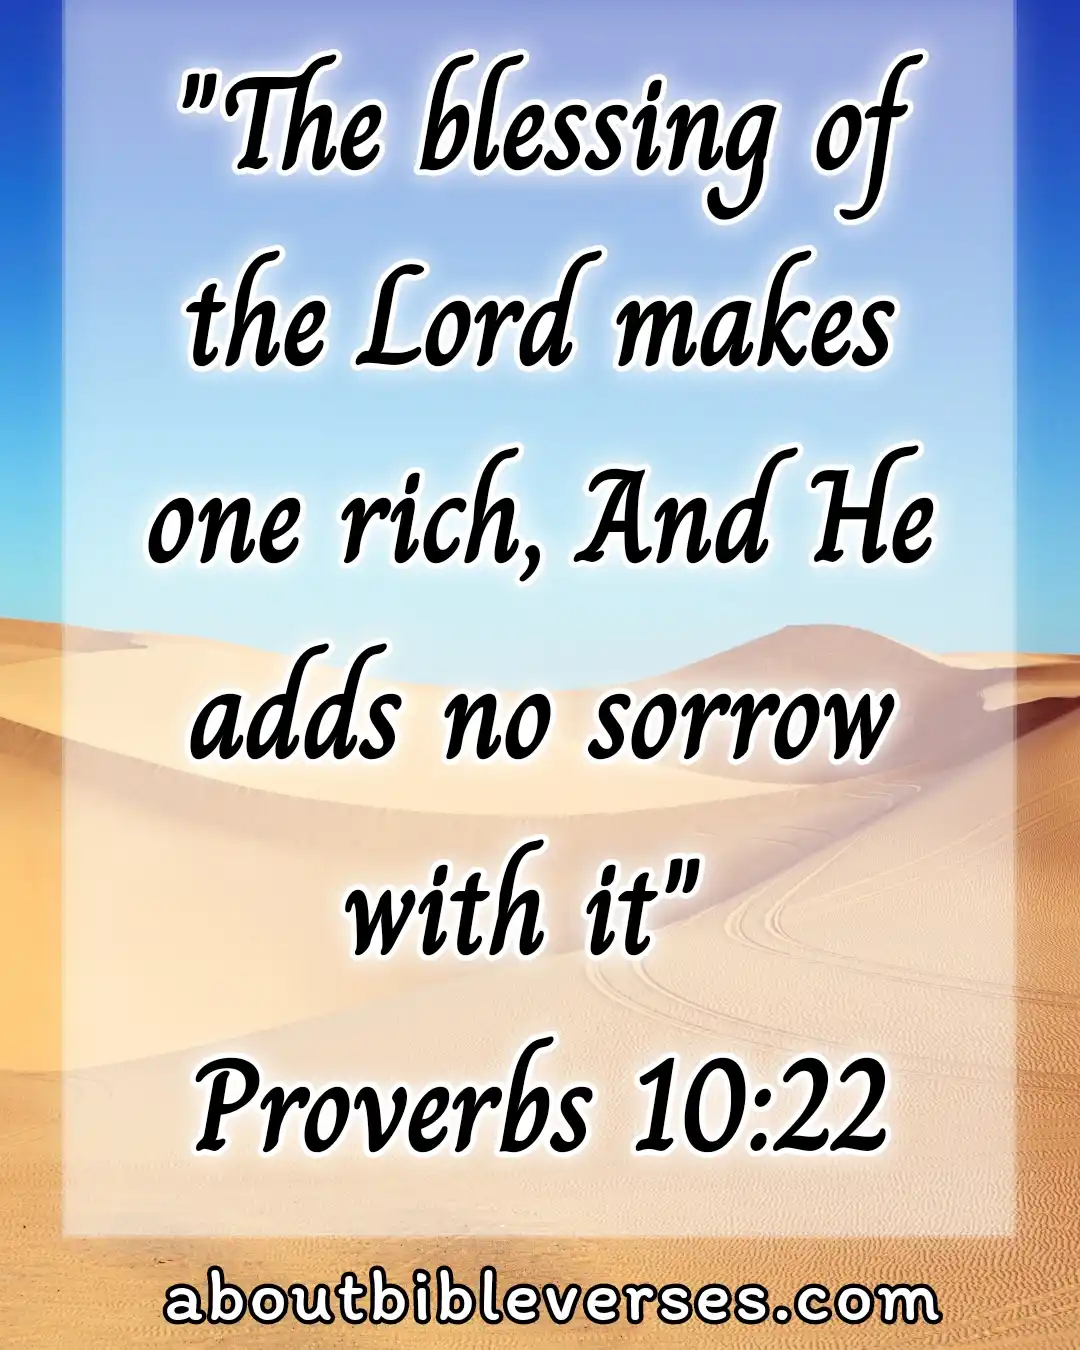 [Best] Más de 19 versículos de la Biblia sobre riqueza y prosperidad